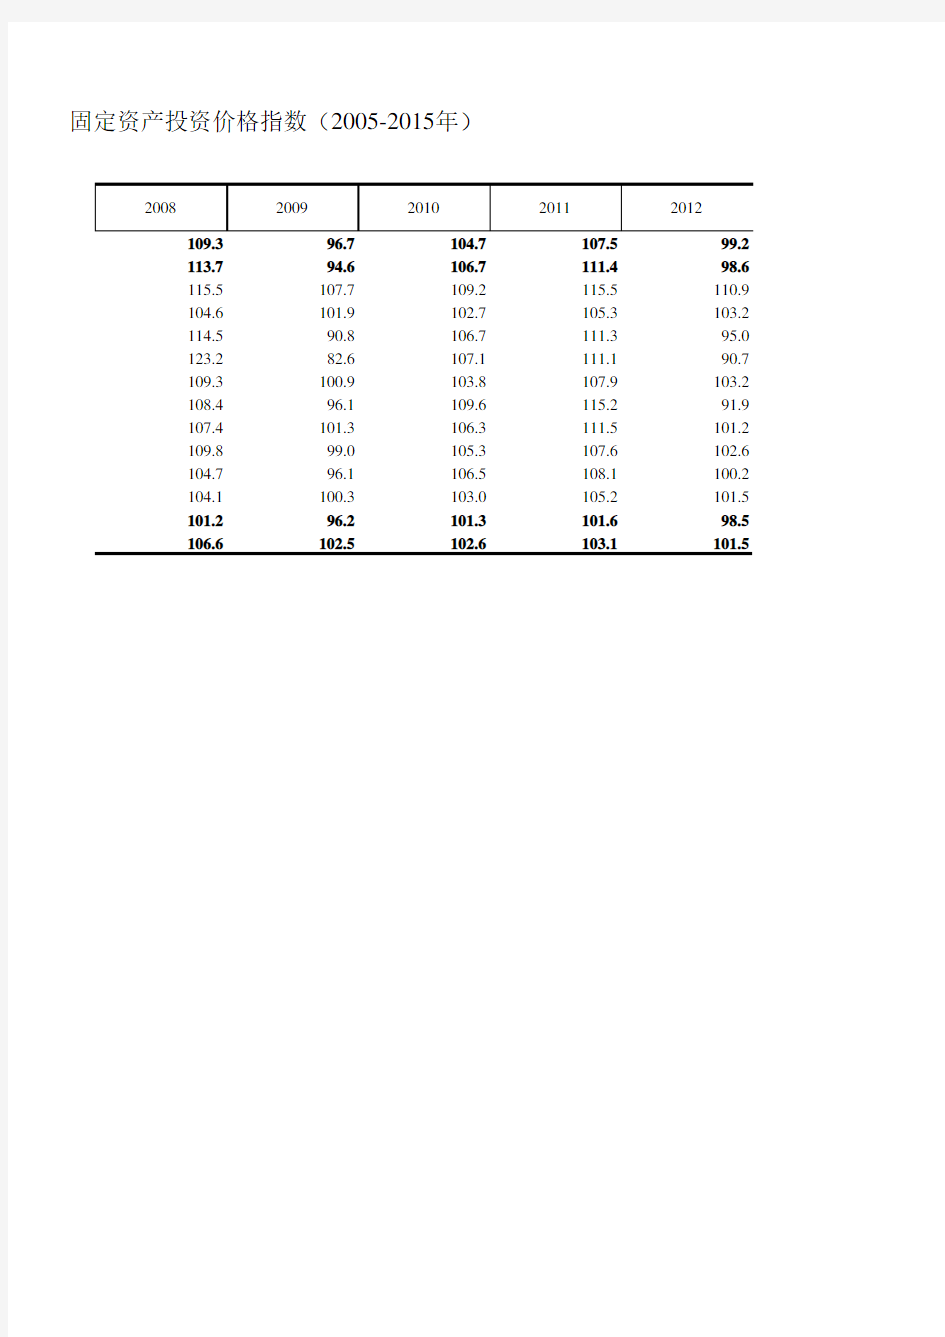 浙江统计年鉴2016社会经济发展指标：固定资产投资价格指数(2005-2015年)